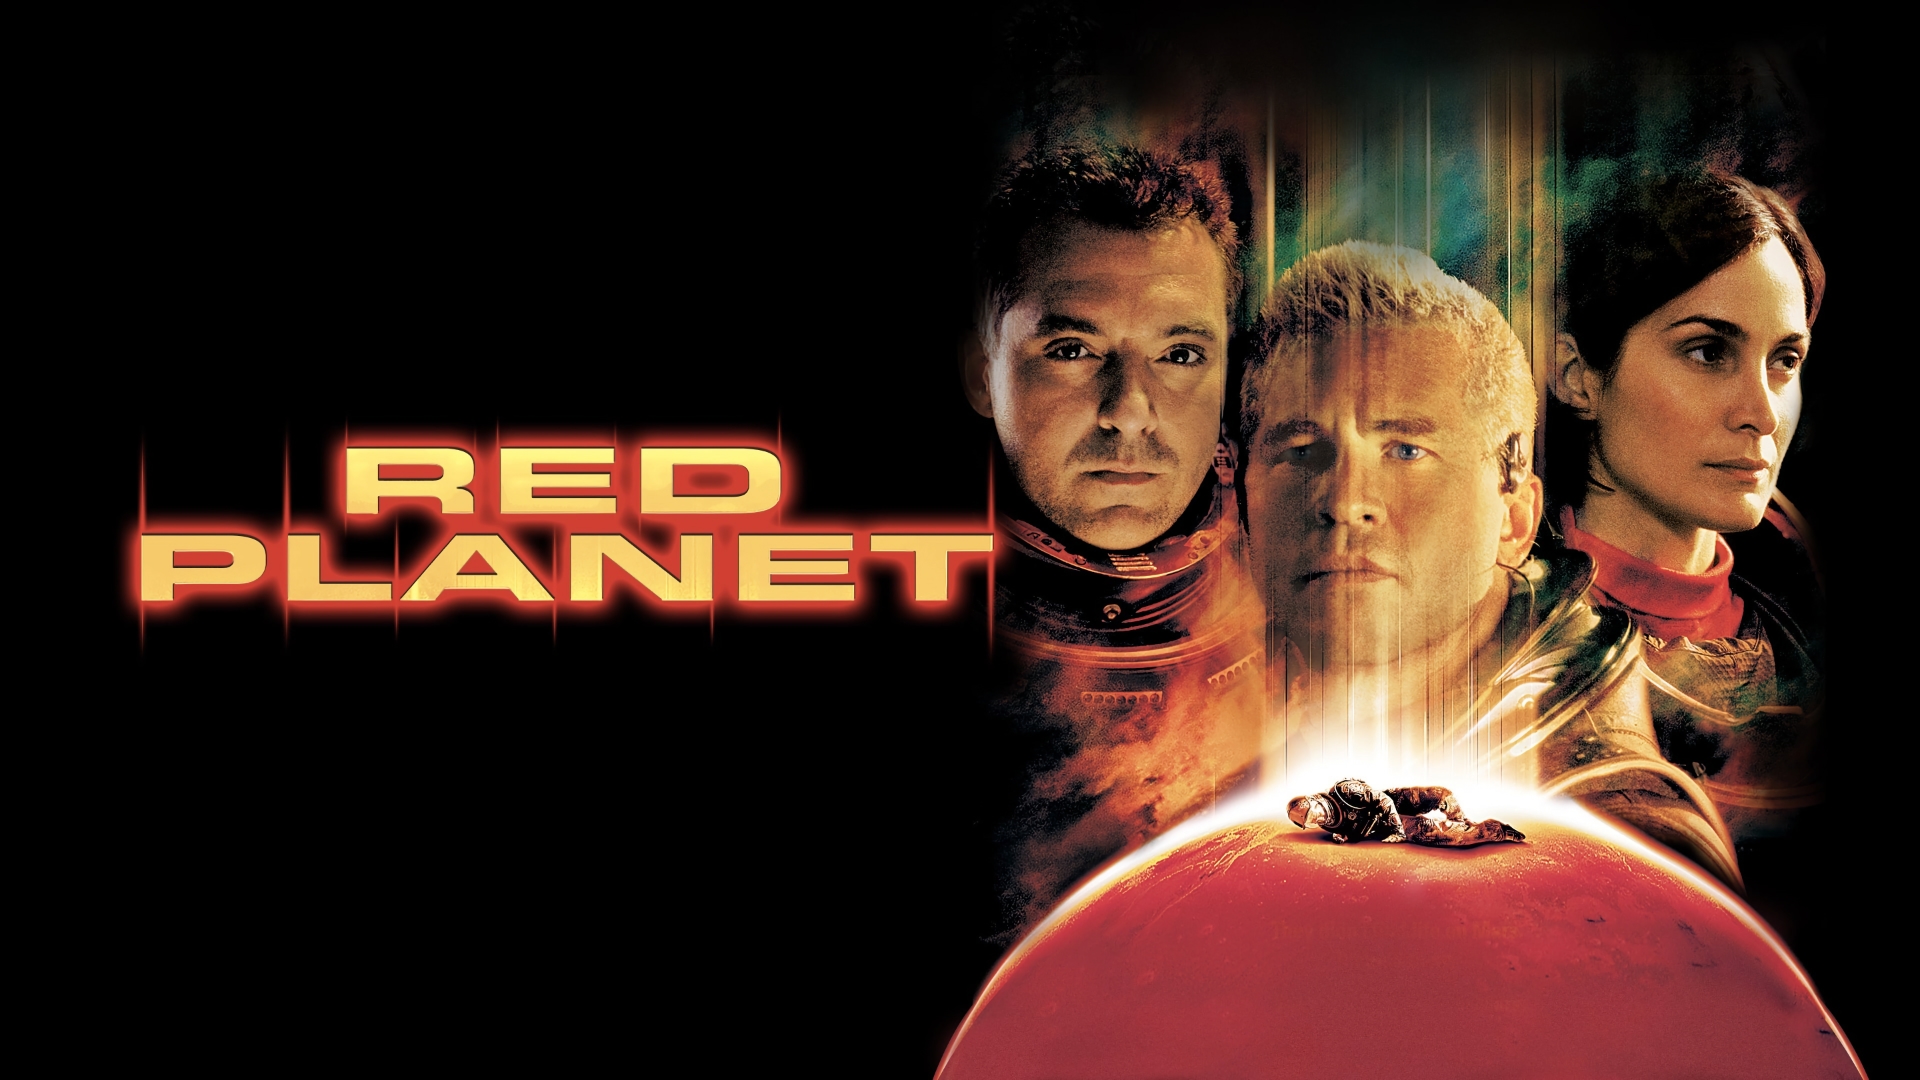 innowacja myślenia: Czerwona planeta (Czerwona planeta) to film bardzo na czasie